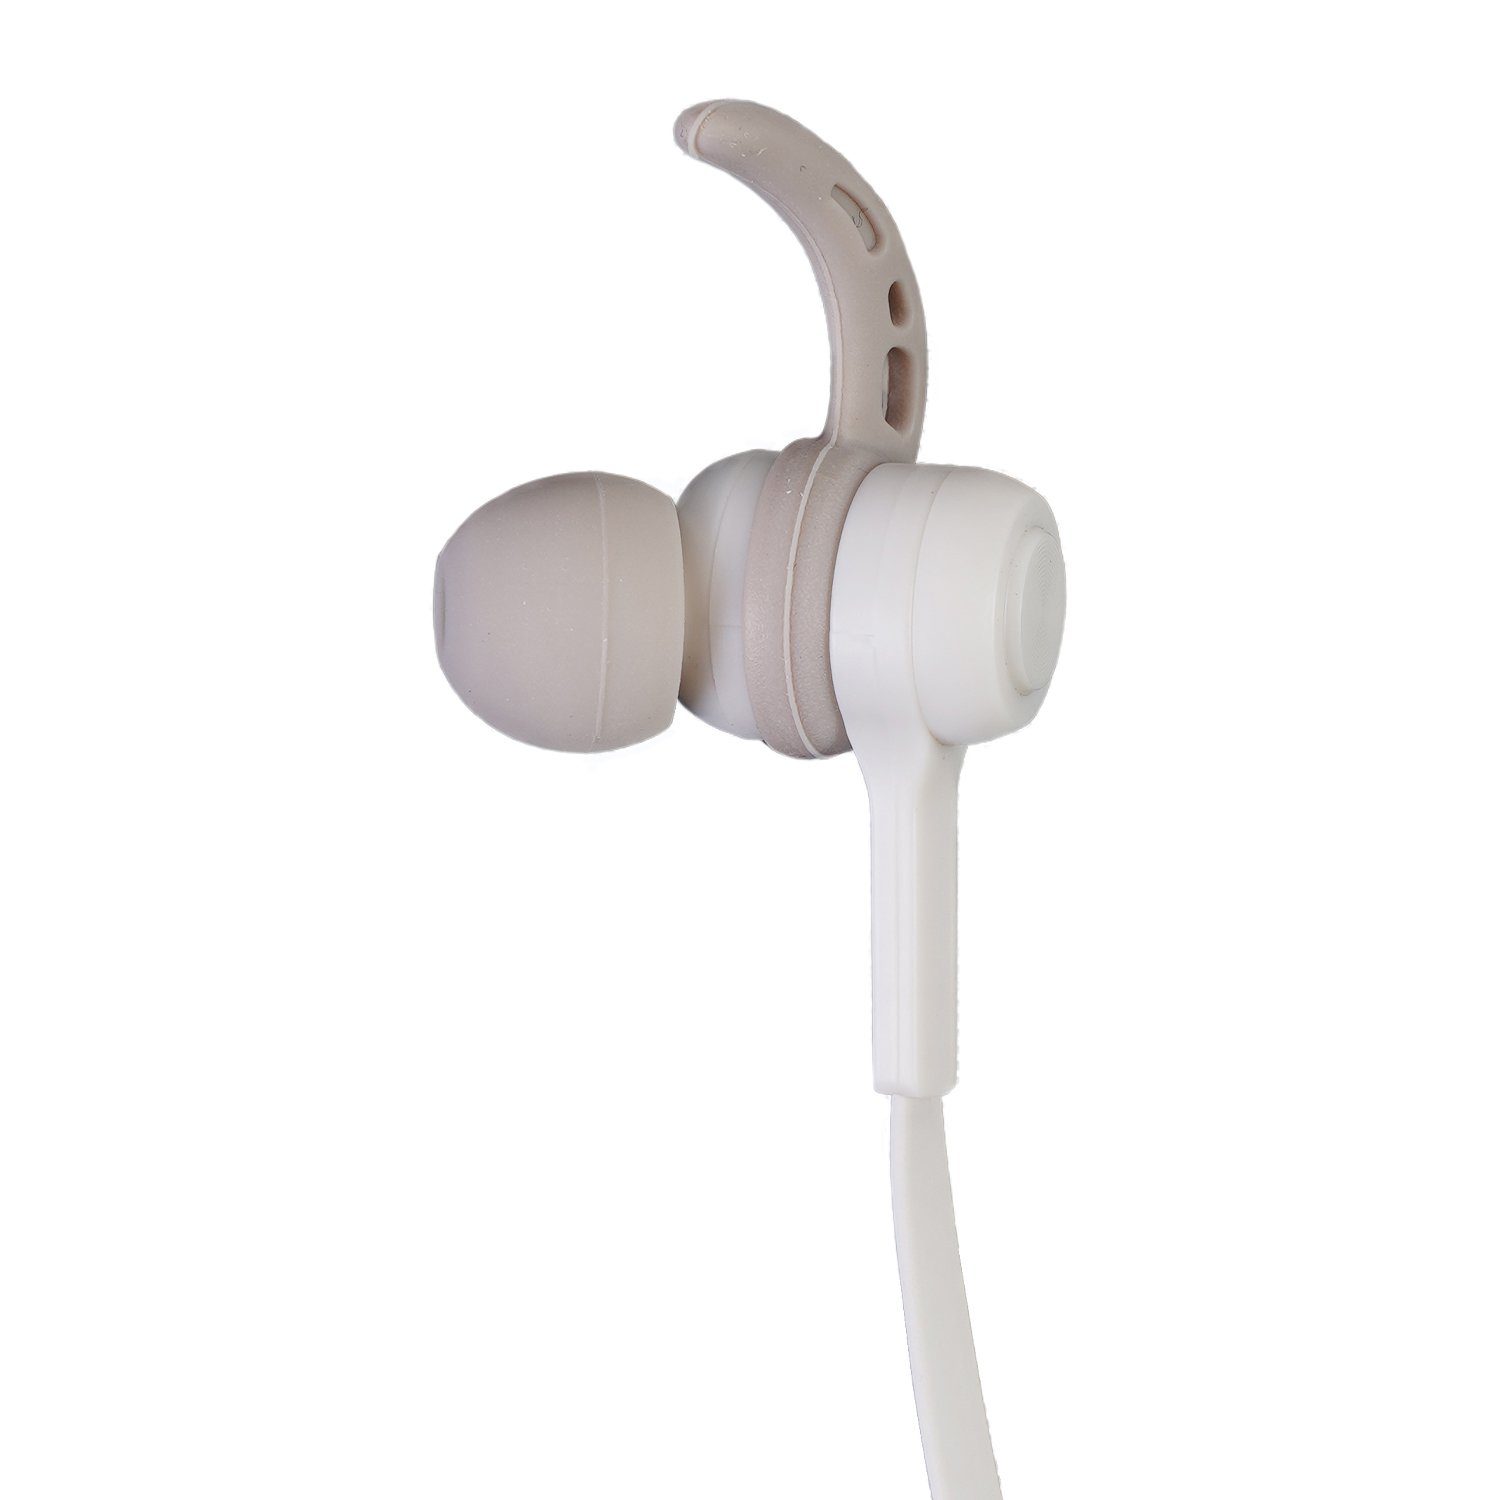 Hama Sport BT Kopfhörer Bluetooth Bluetooth mit Wiedergabe-Steuerung, Bluetooth, Mikrofon, Headset Wiedergabe-Steuerung, Ohrbügel Mikrofon) (Anruffunktion, Anruf-Funktionen, Schweißfest, Smartphone-Headset 5.0